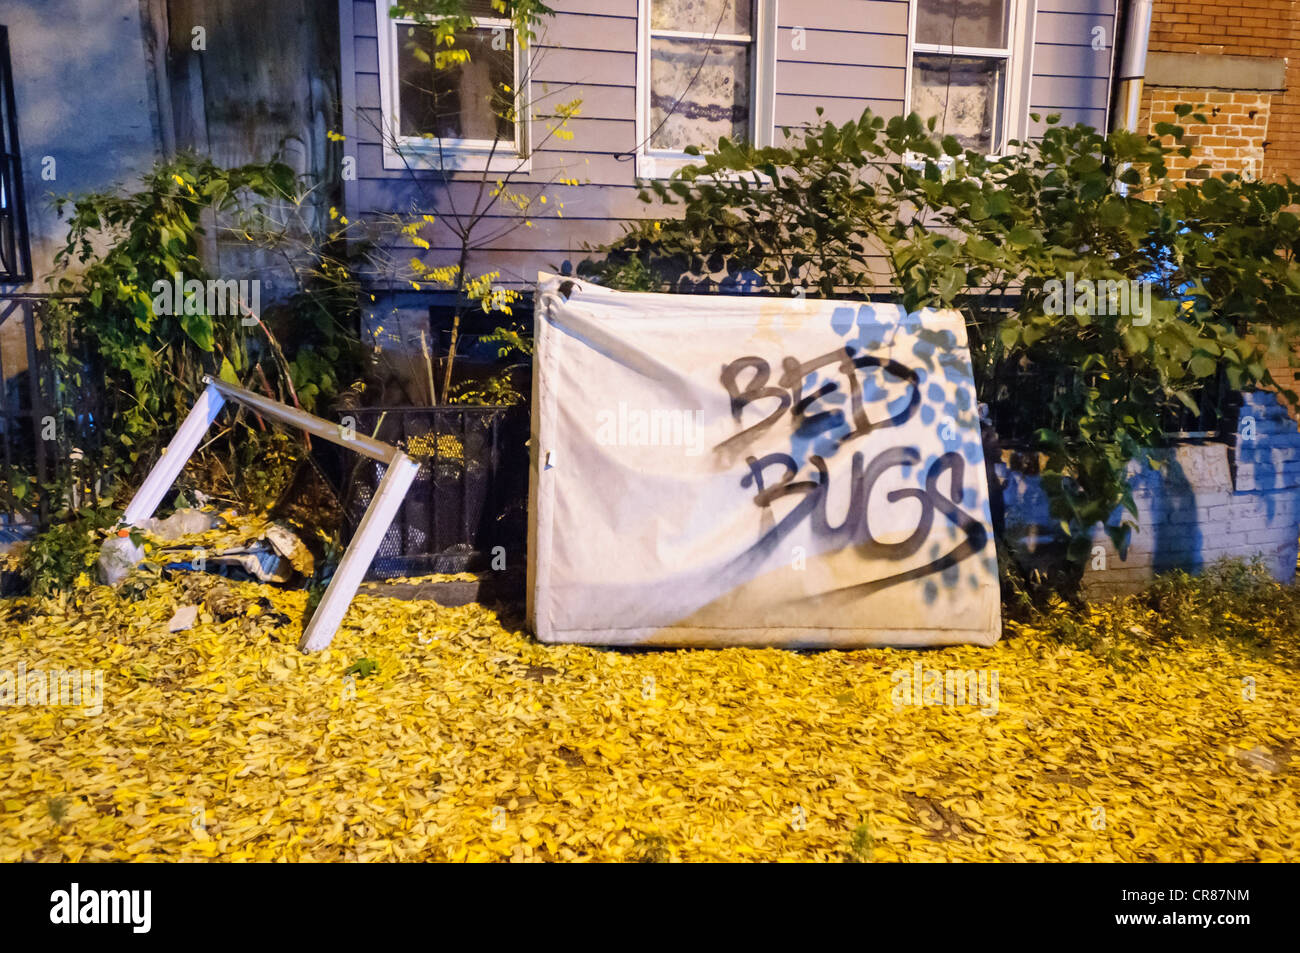 Un colchón abandonado con las palabras "chinches" pintado con spray. Brooklyn, Nueva York Foto de stock